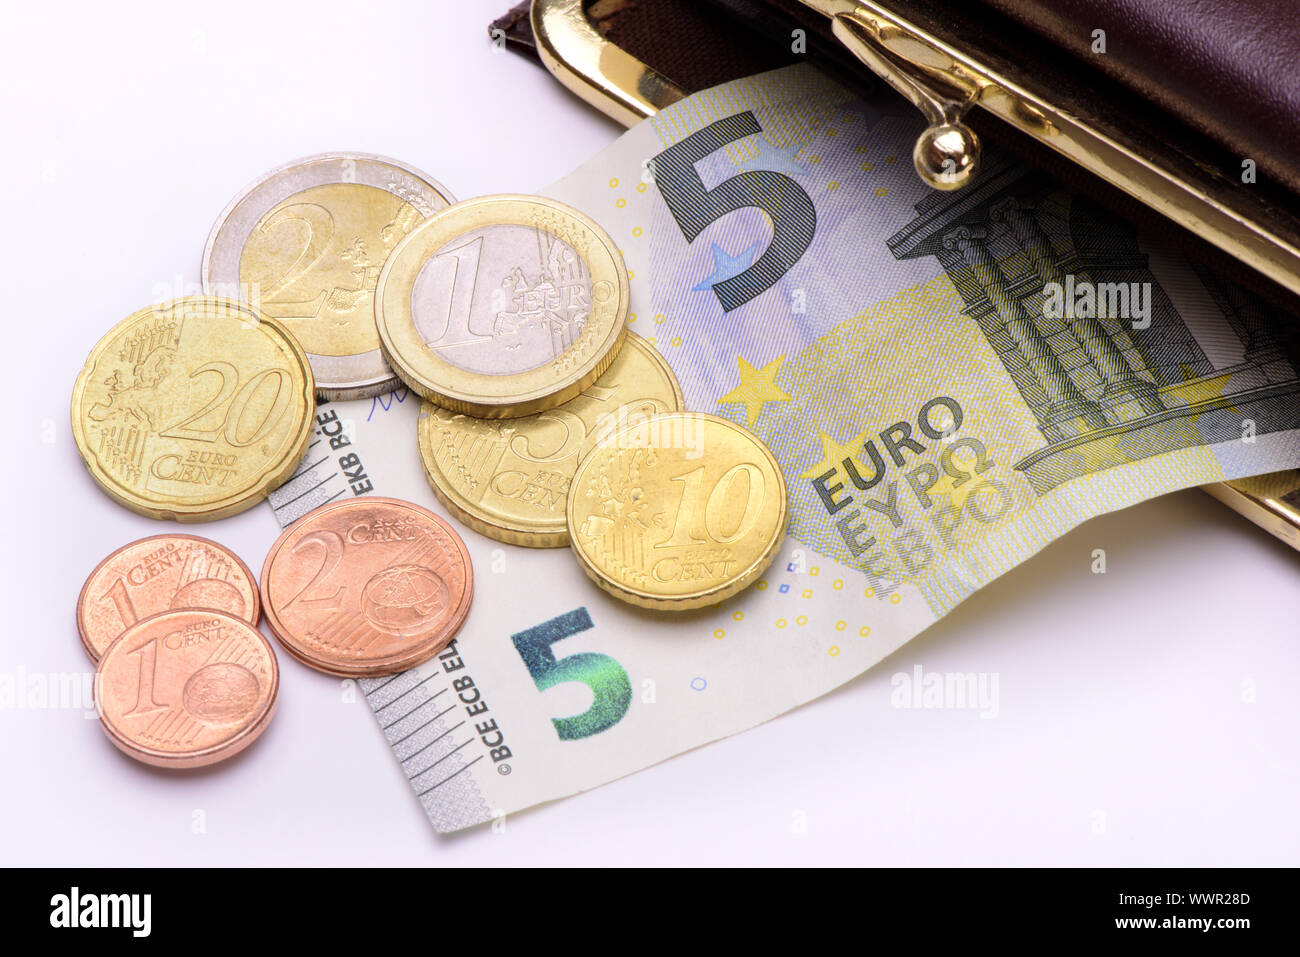 Salaire horaire Salaire Minimum 8,84 Euro Banque D'Images